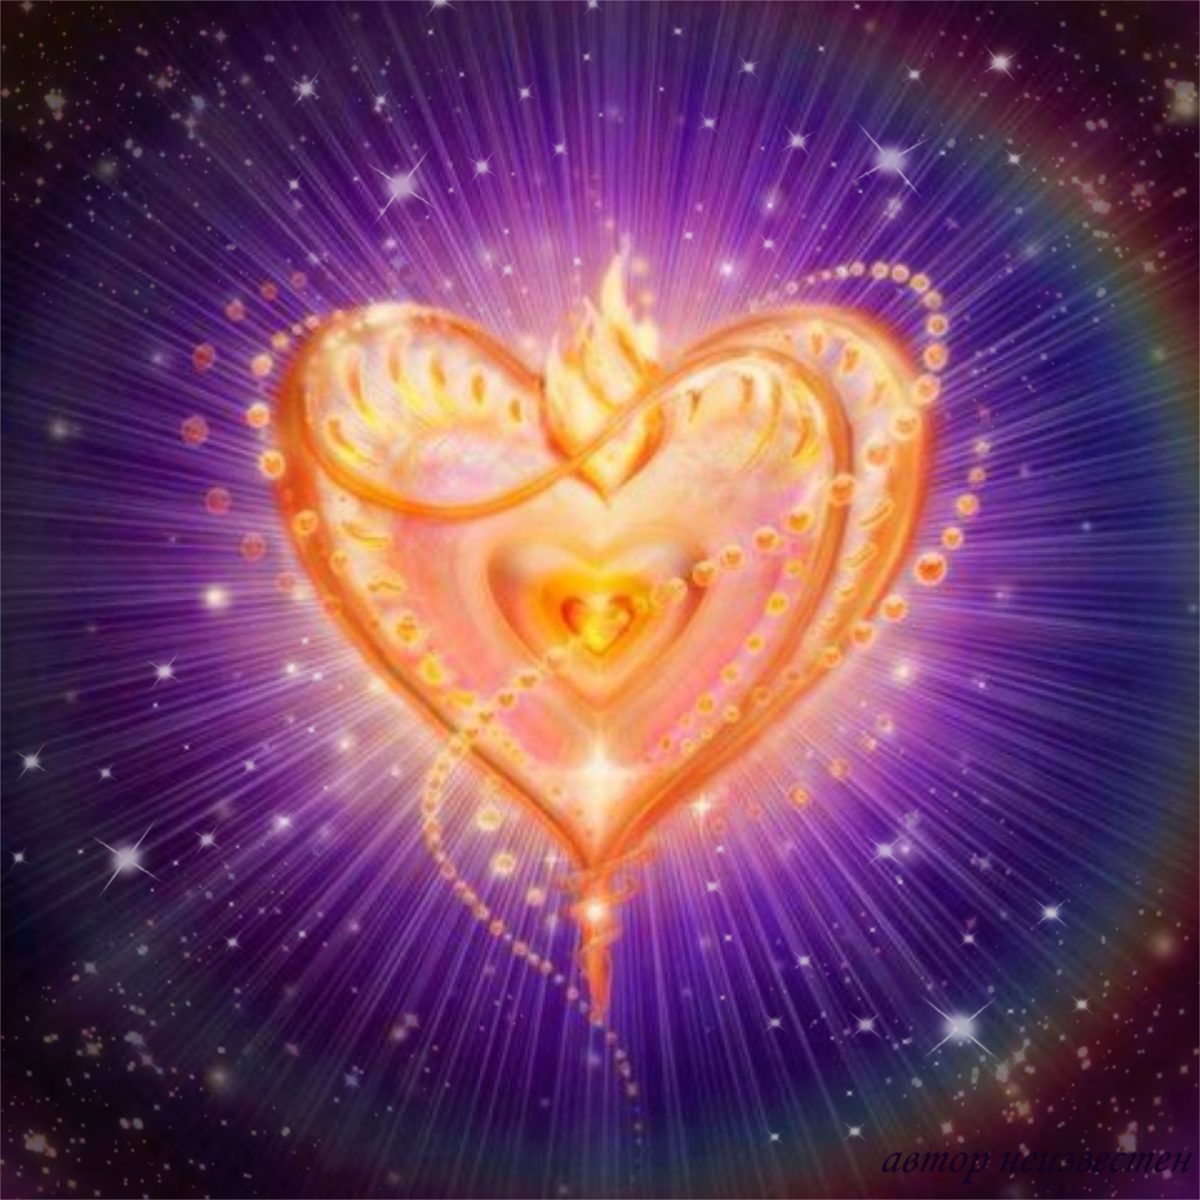 Божественная энергия любви. Сияющее сердце. Безусловная Божественная любовь. Духовное сердце. Честная душа и золотое сердце герой